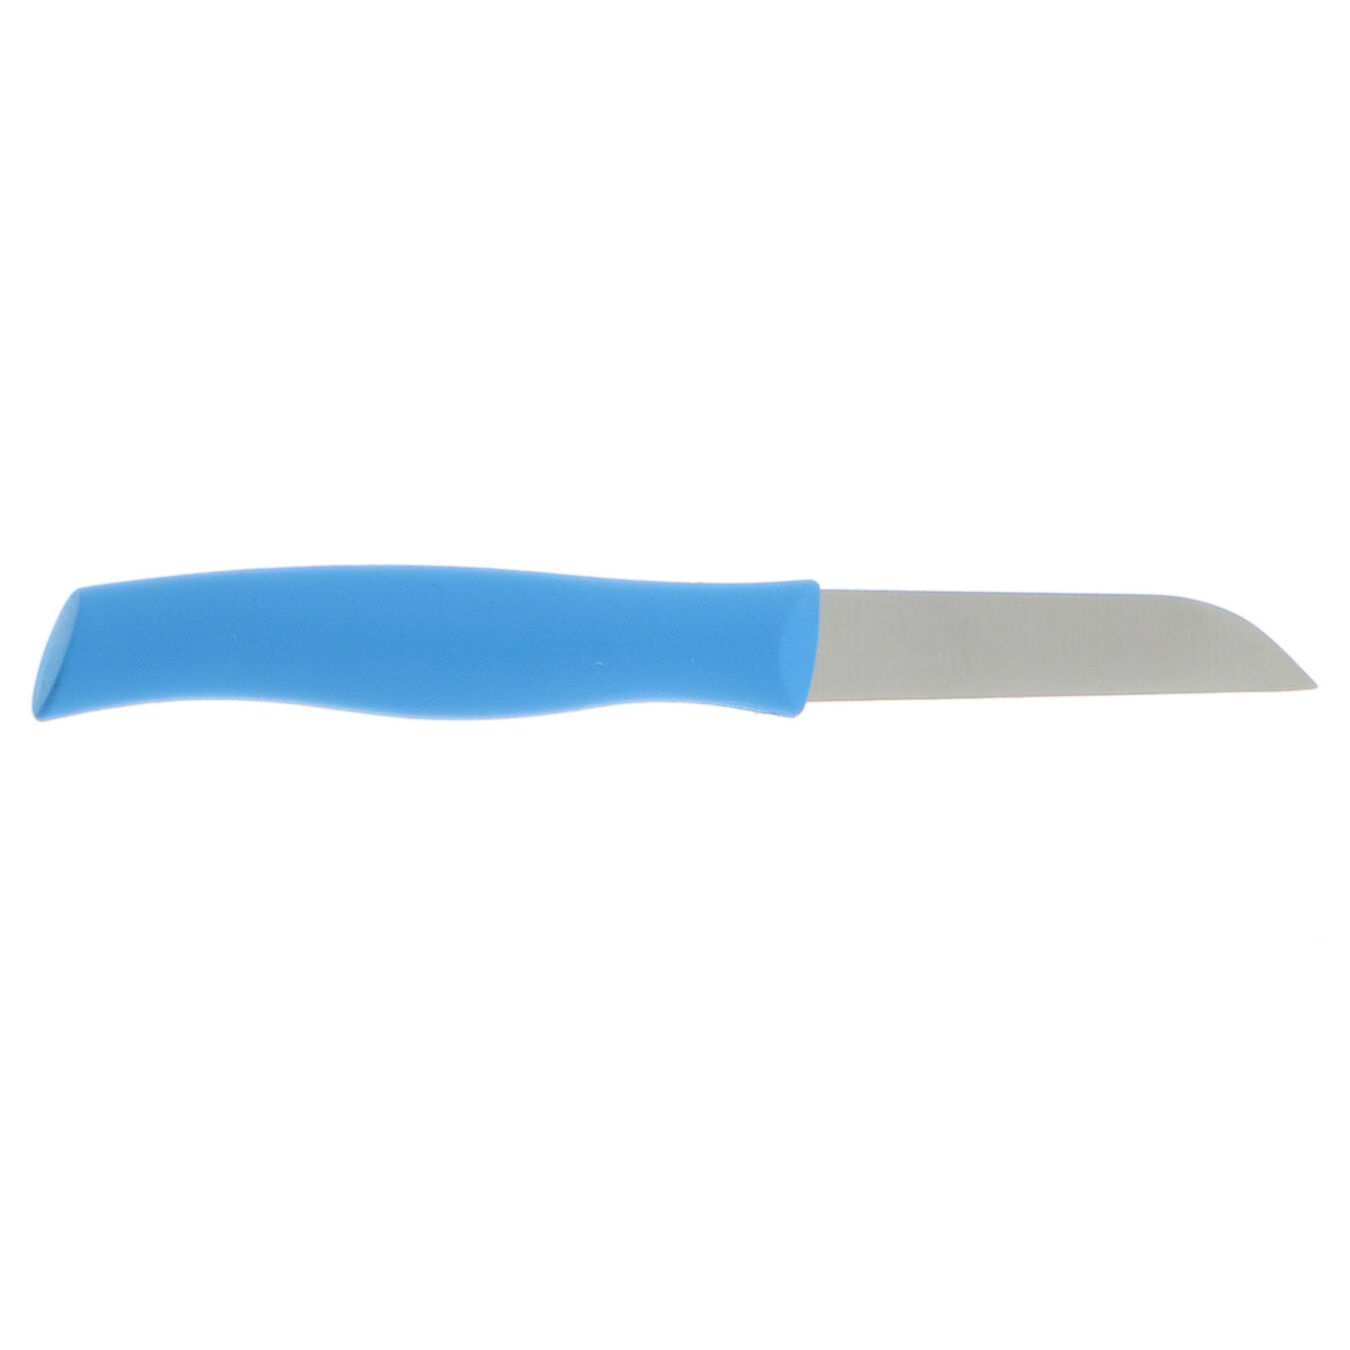 3-inch, Vegetable Knife Blue,,large 2